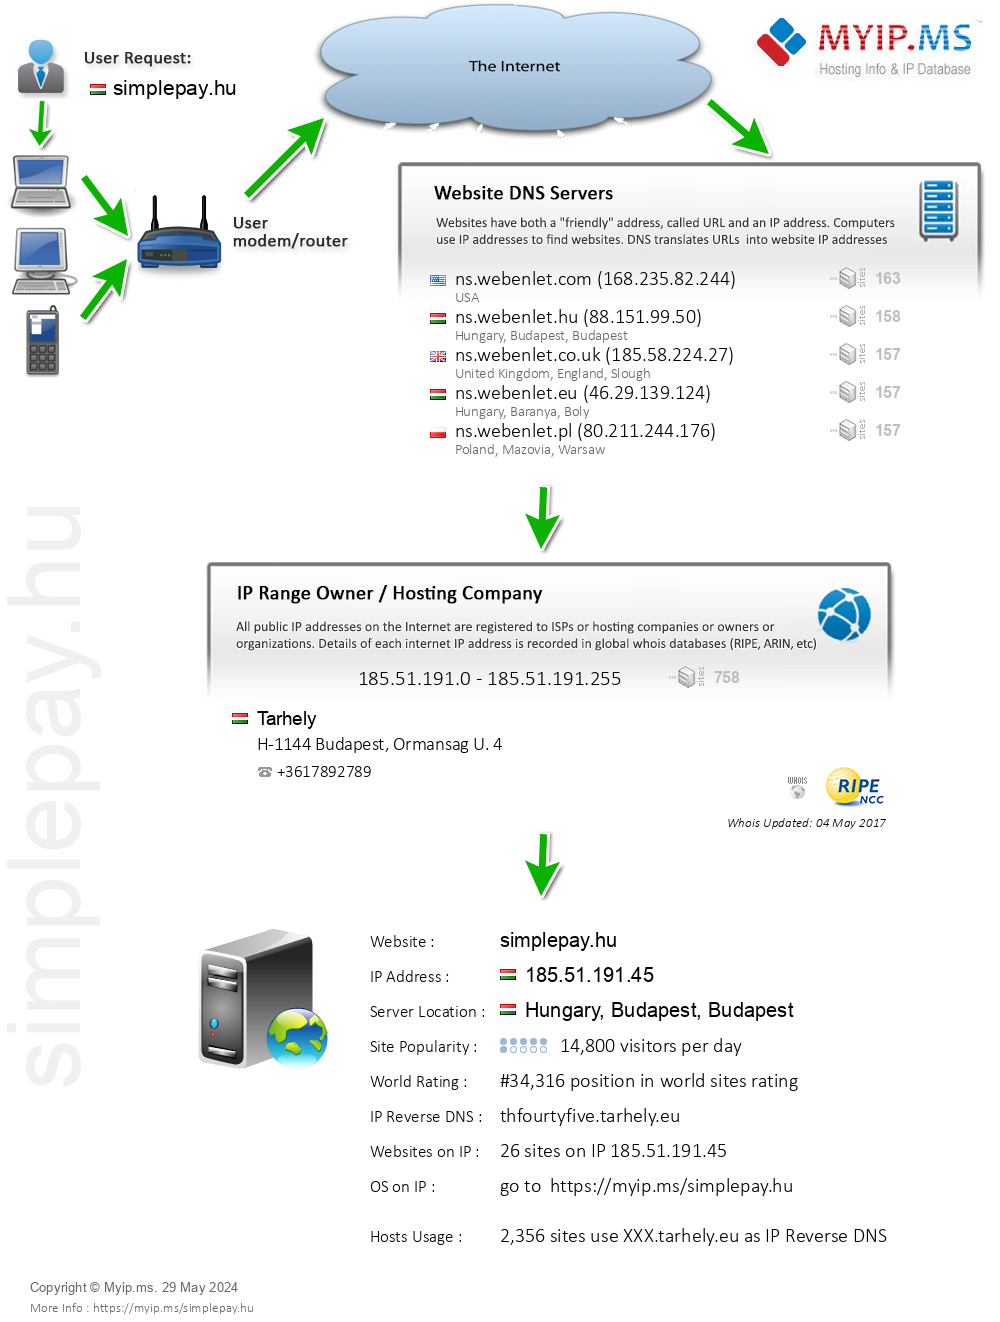 Simplepay.hu - Website Hosting Visual IP Diagram